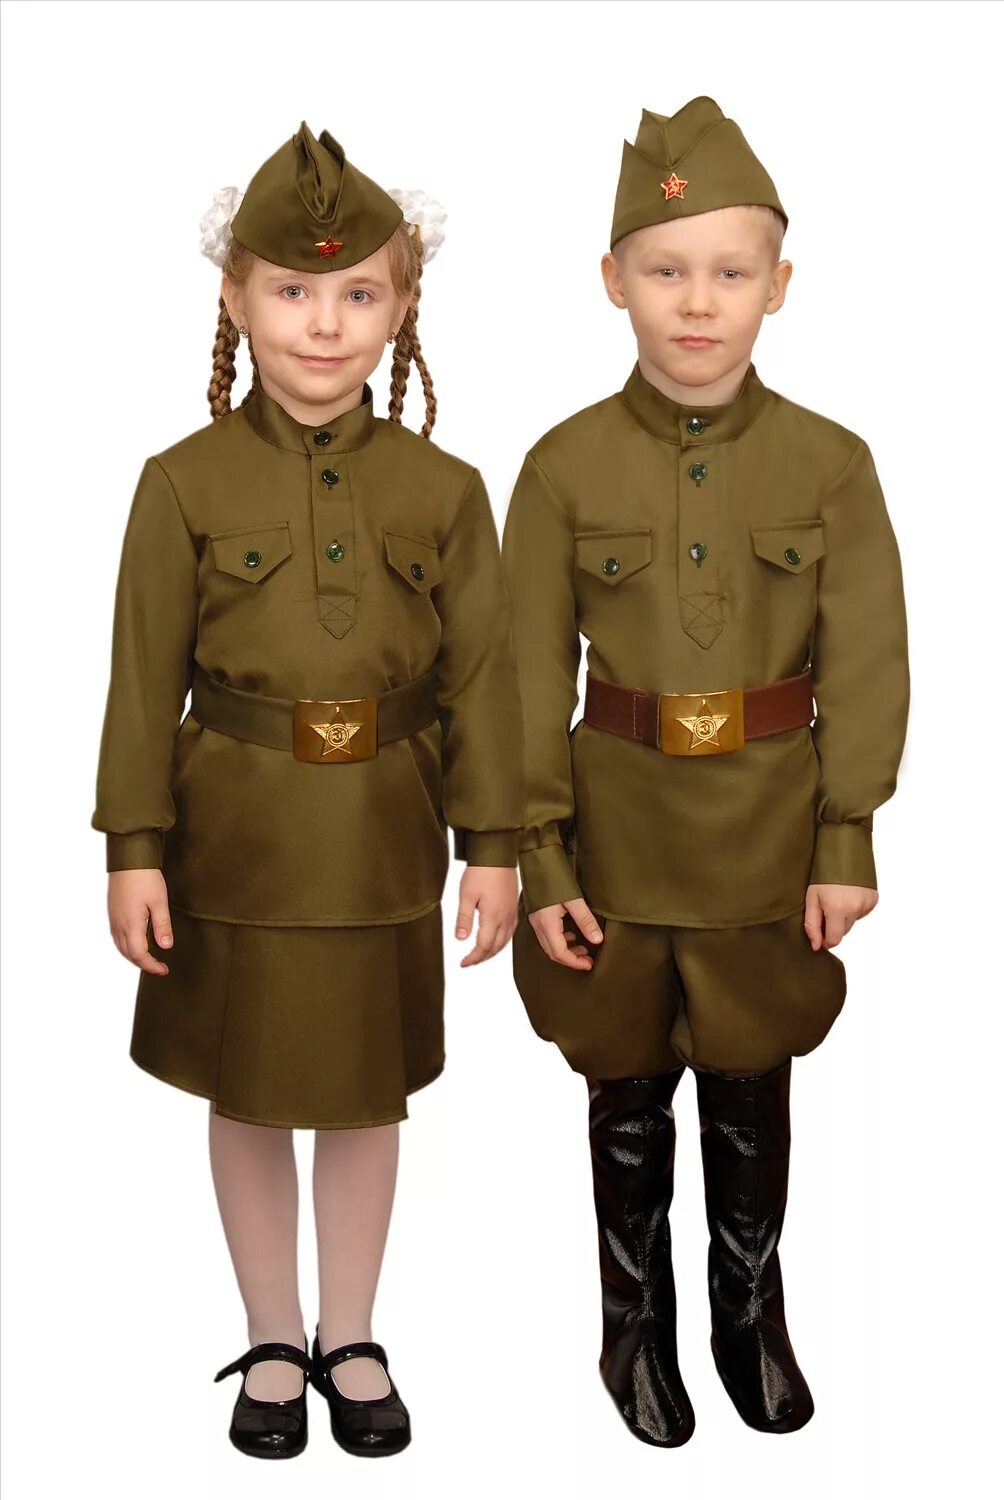 Купить военную форму на 9 мая. Дети в военной форме. Военные костюмы для детей. Военная формалля детей. Солдатская форма для детей.